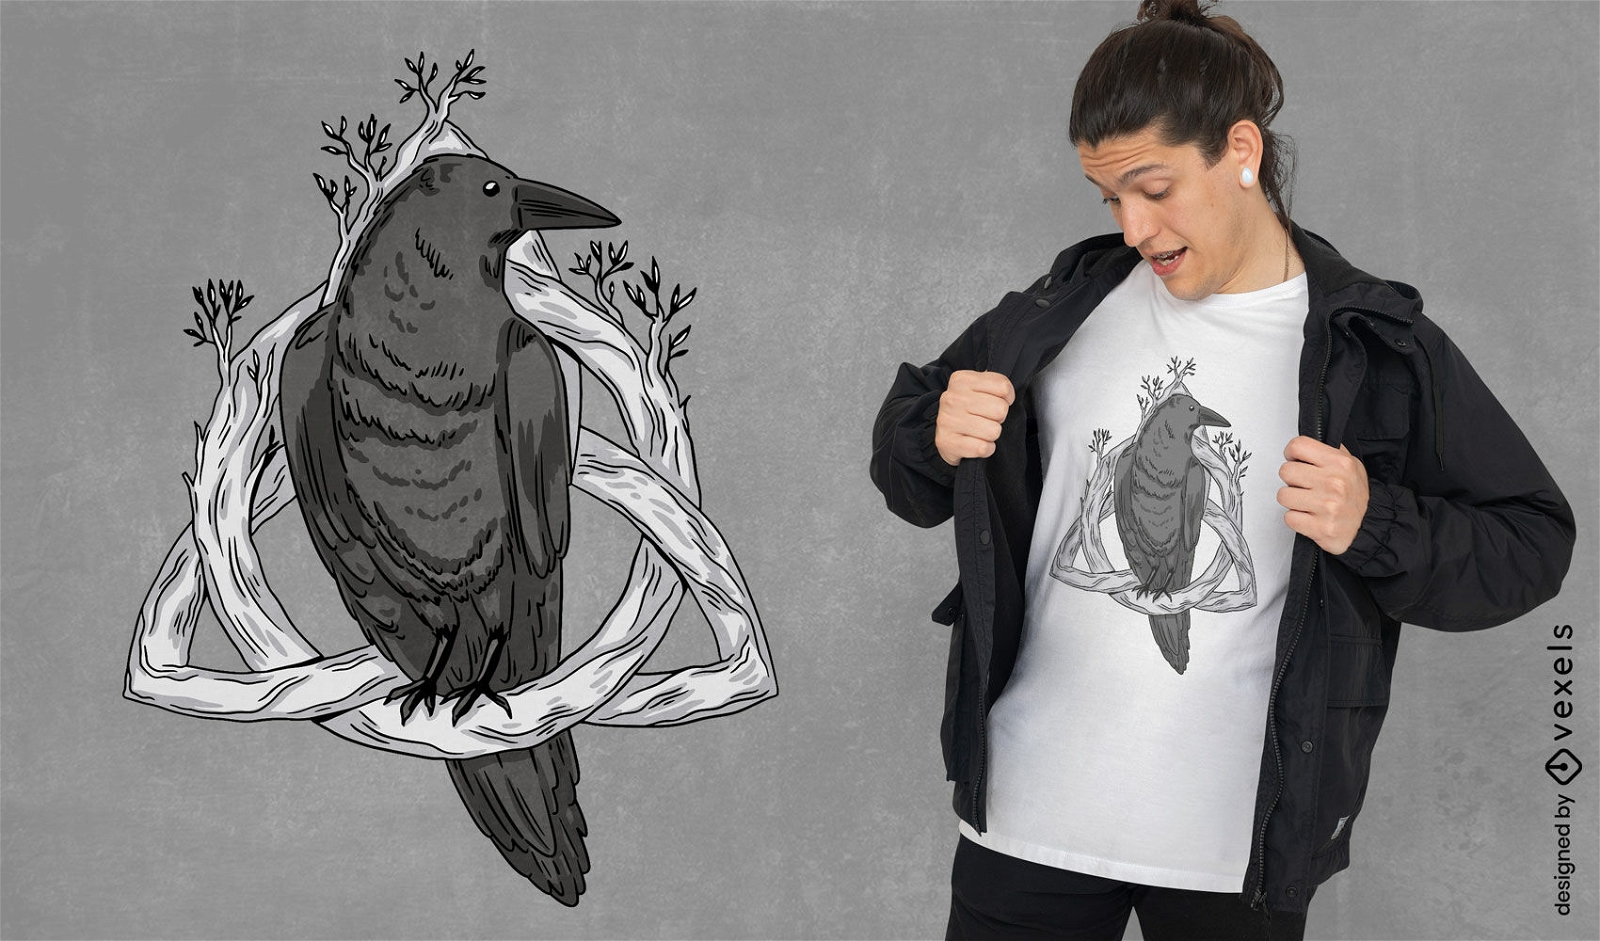 Raven no design de camiseta de símbolo nórdico